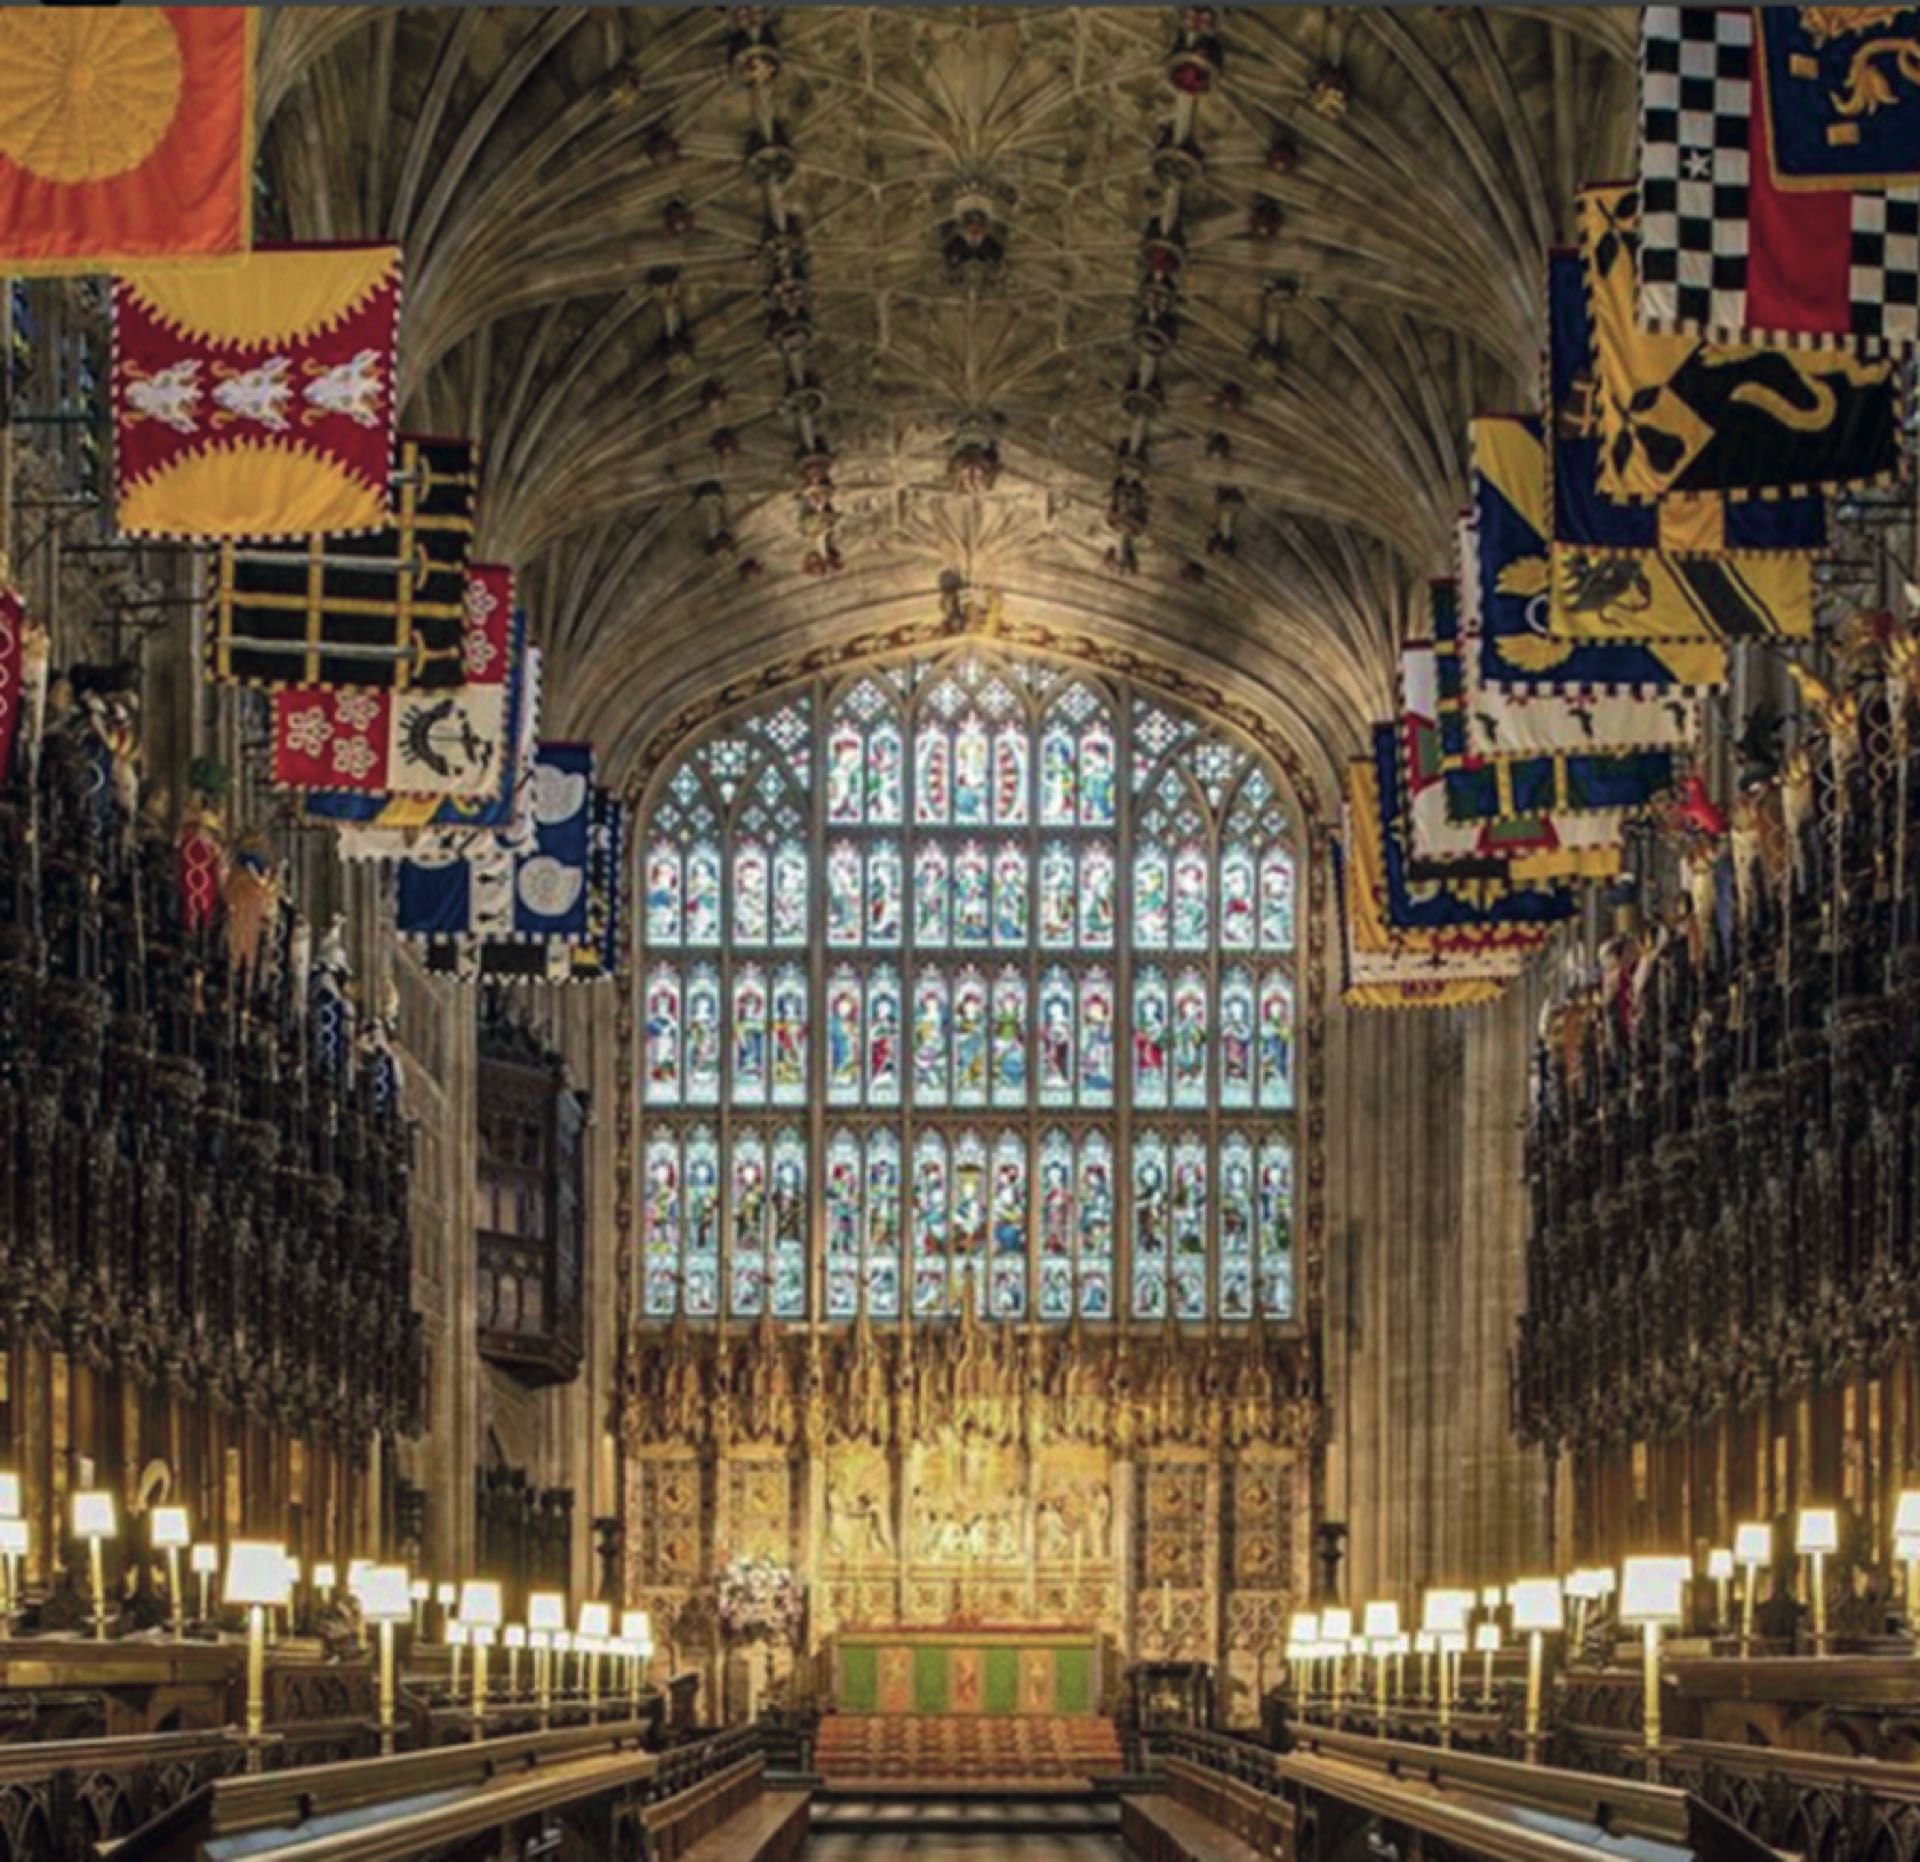 xCuándo y dónde. El 19 de mayo a las 12 PM en la capilla de St. George, en el castillo de Windsor, donde Harry fue bautizado en 1984. 